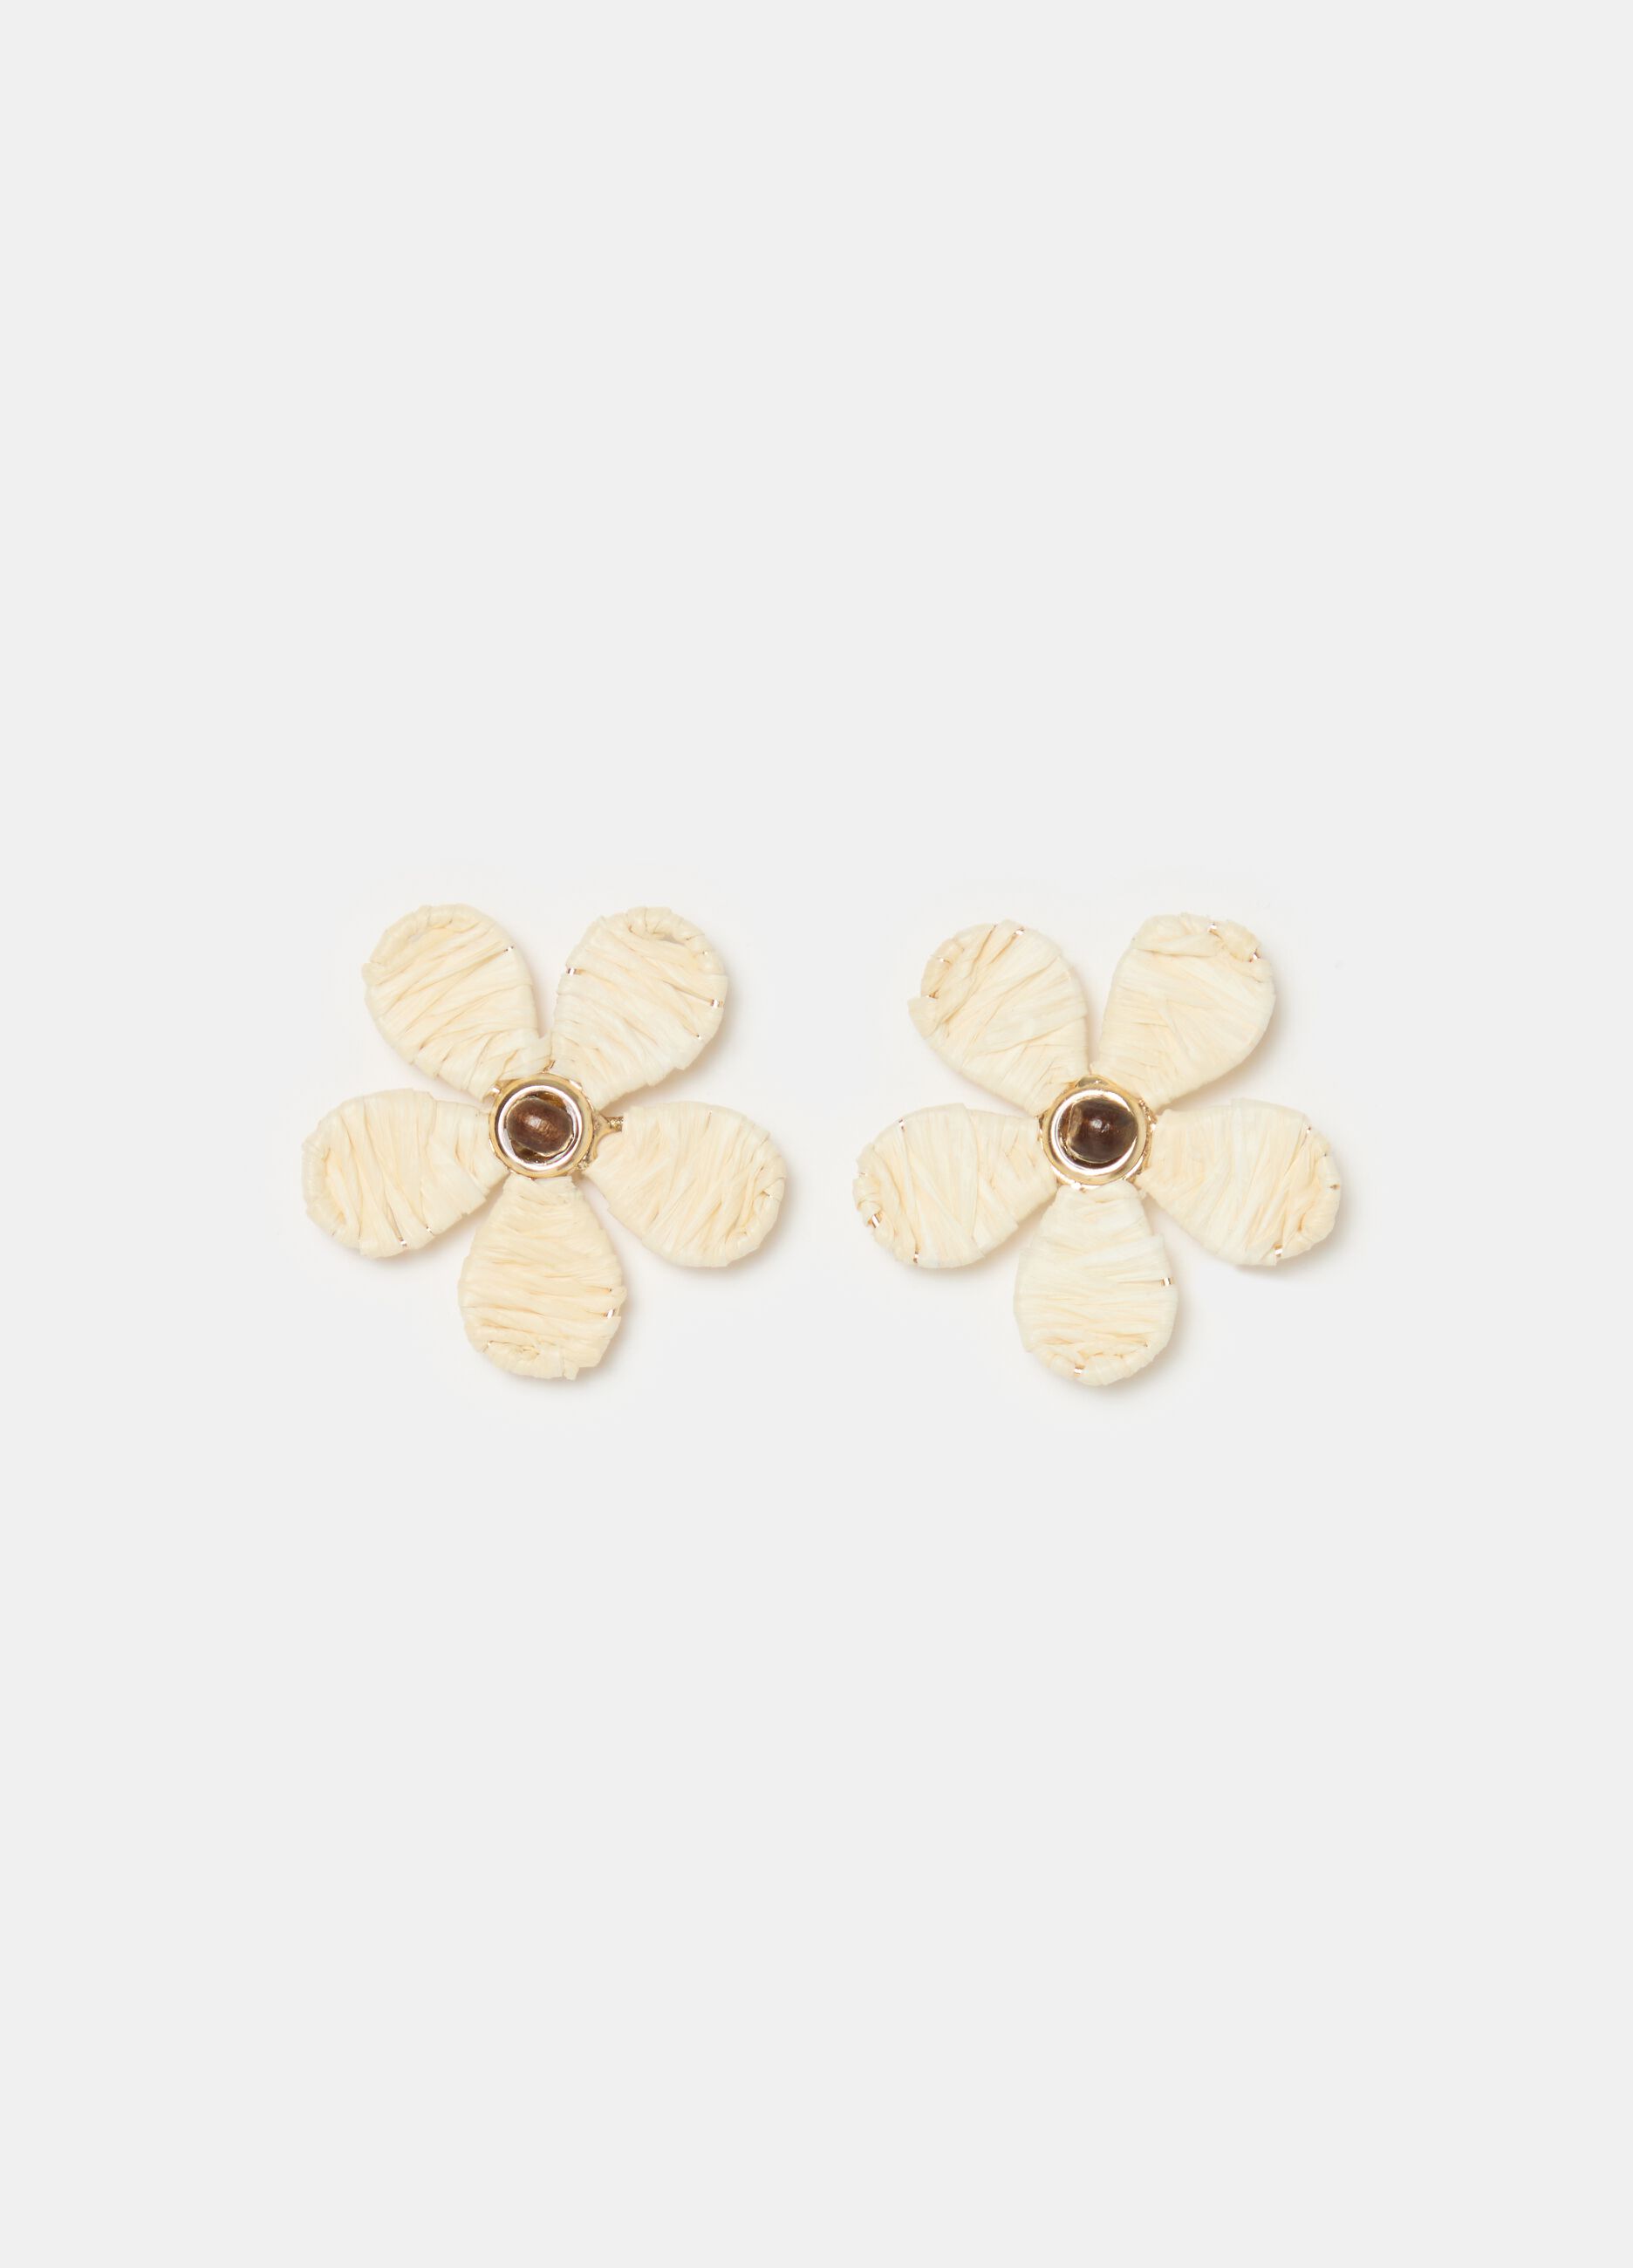 Flower earrings with raffia